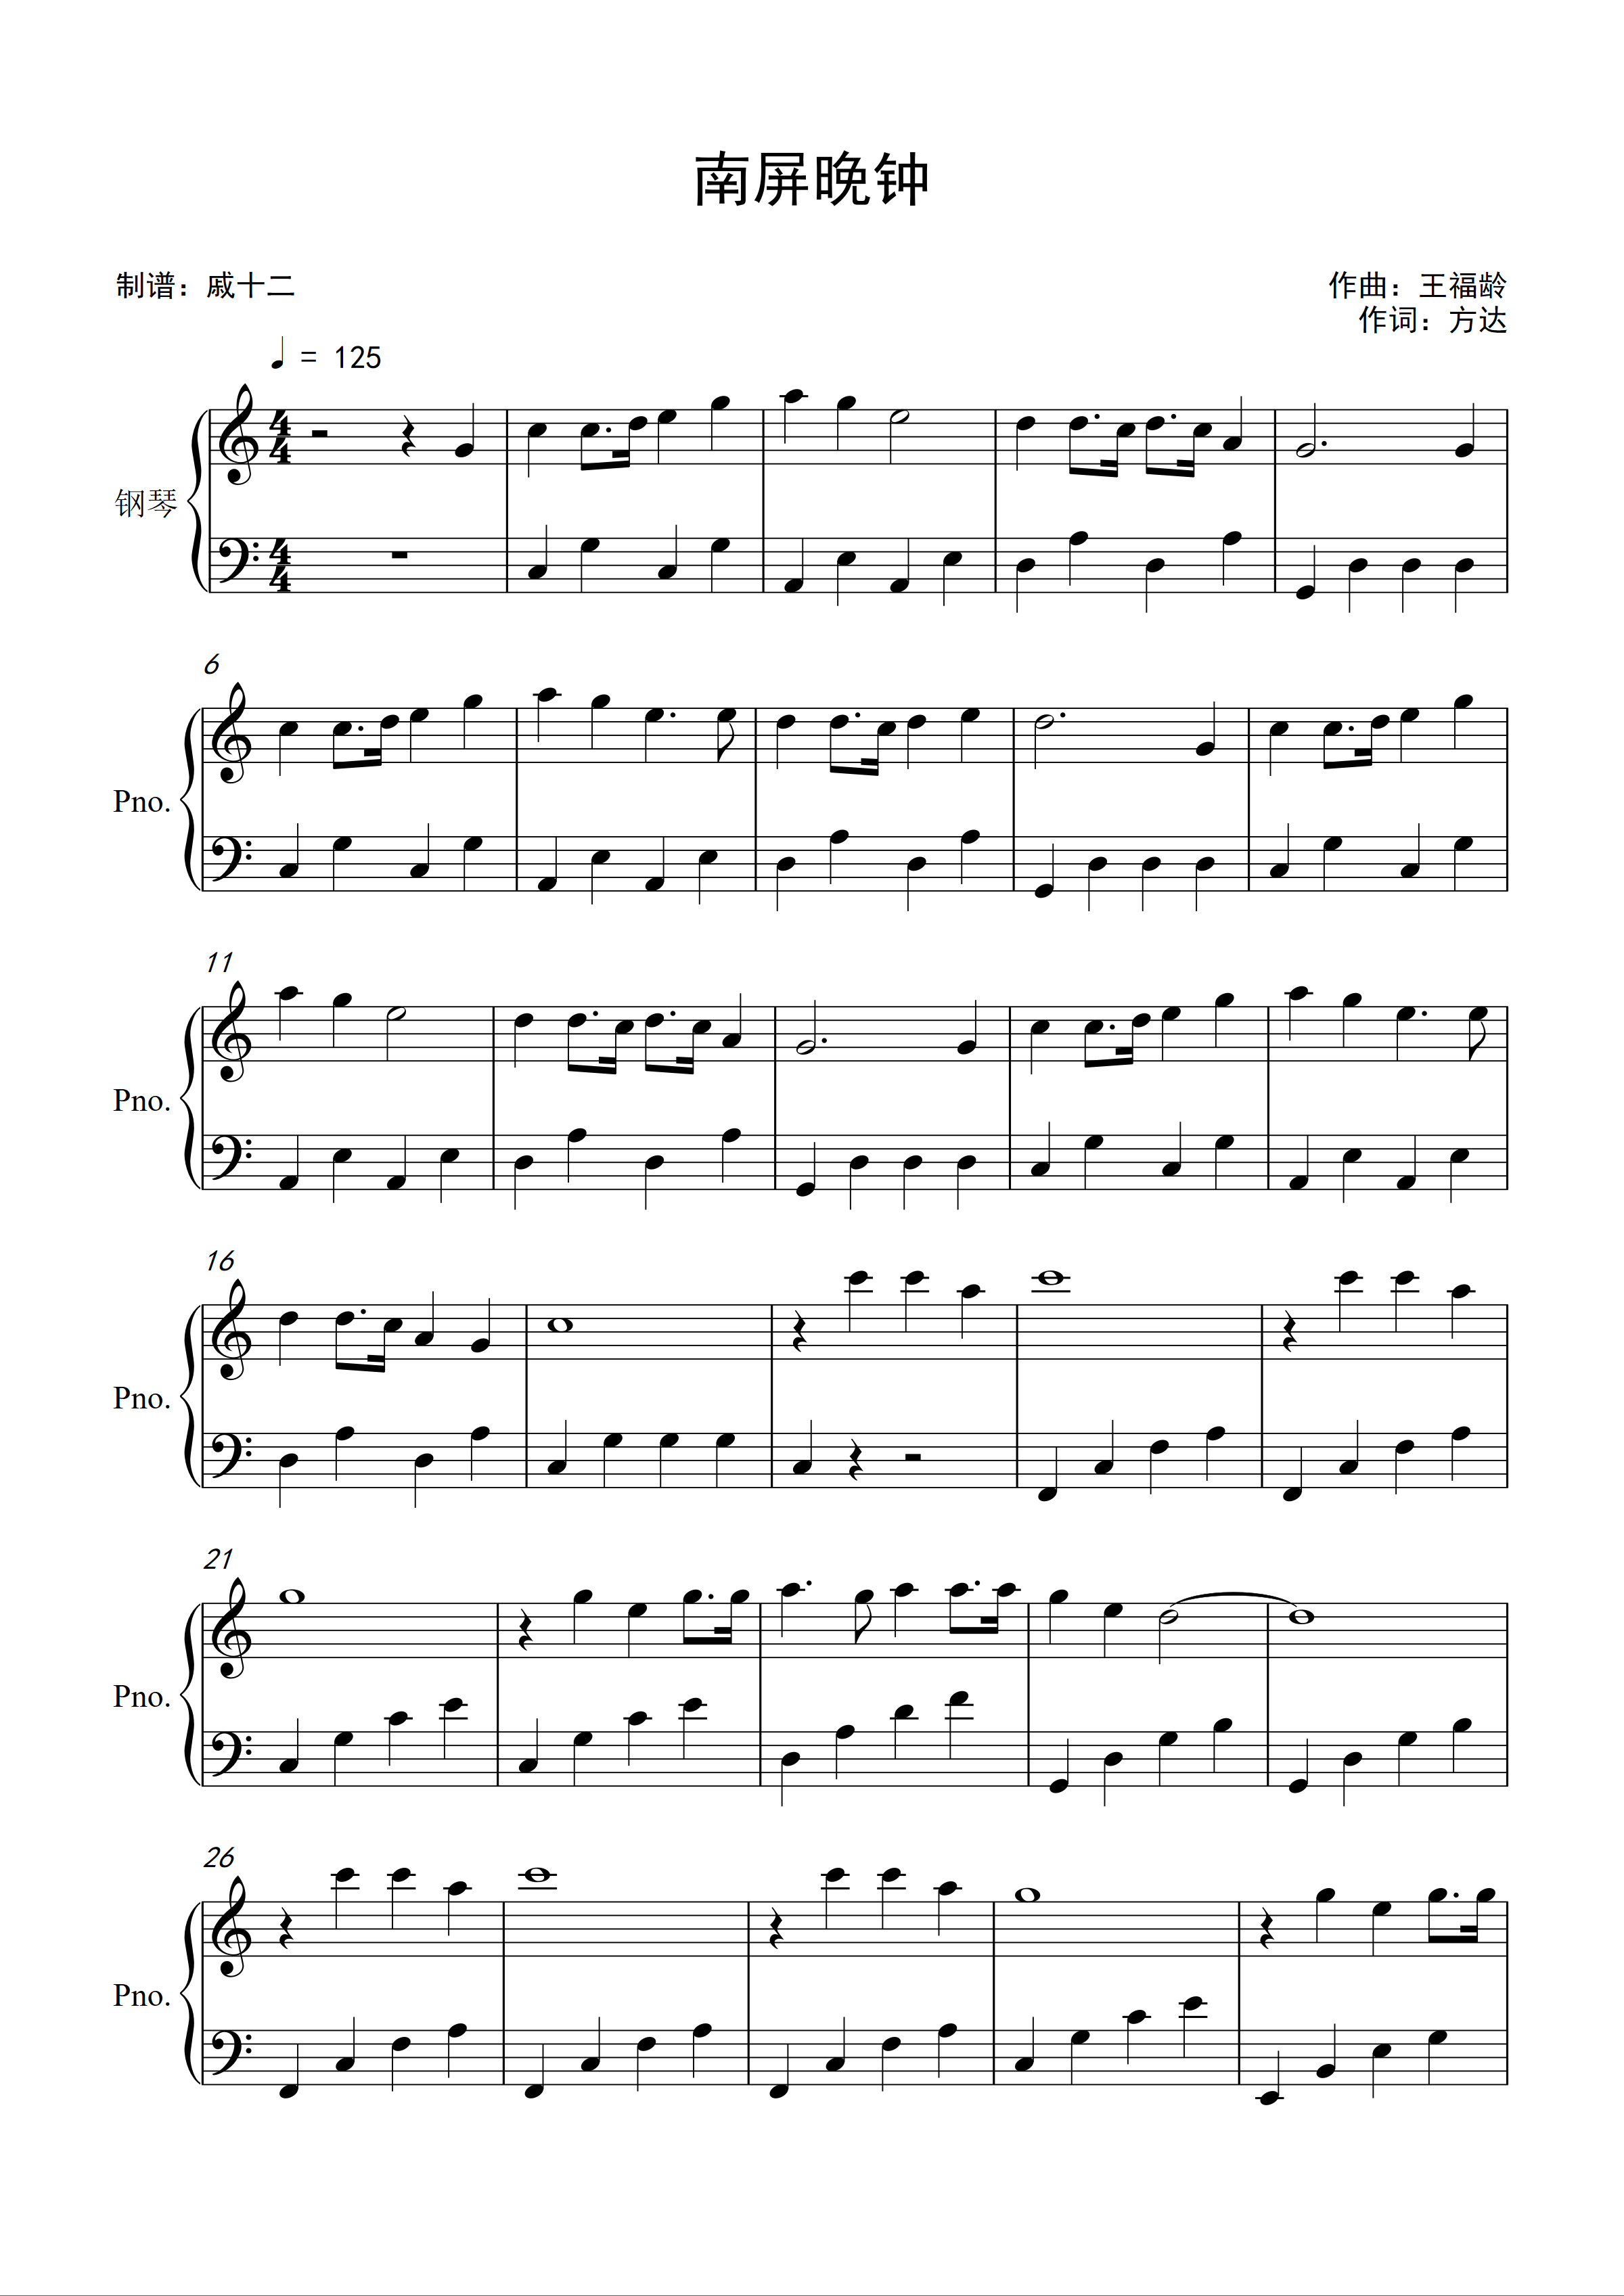 简化版《南屏晚钟》钢琴谱 - 初学者最易上手 - 崔萍带指法钢琴谱子 - 钢琴简谱